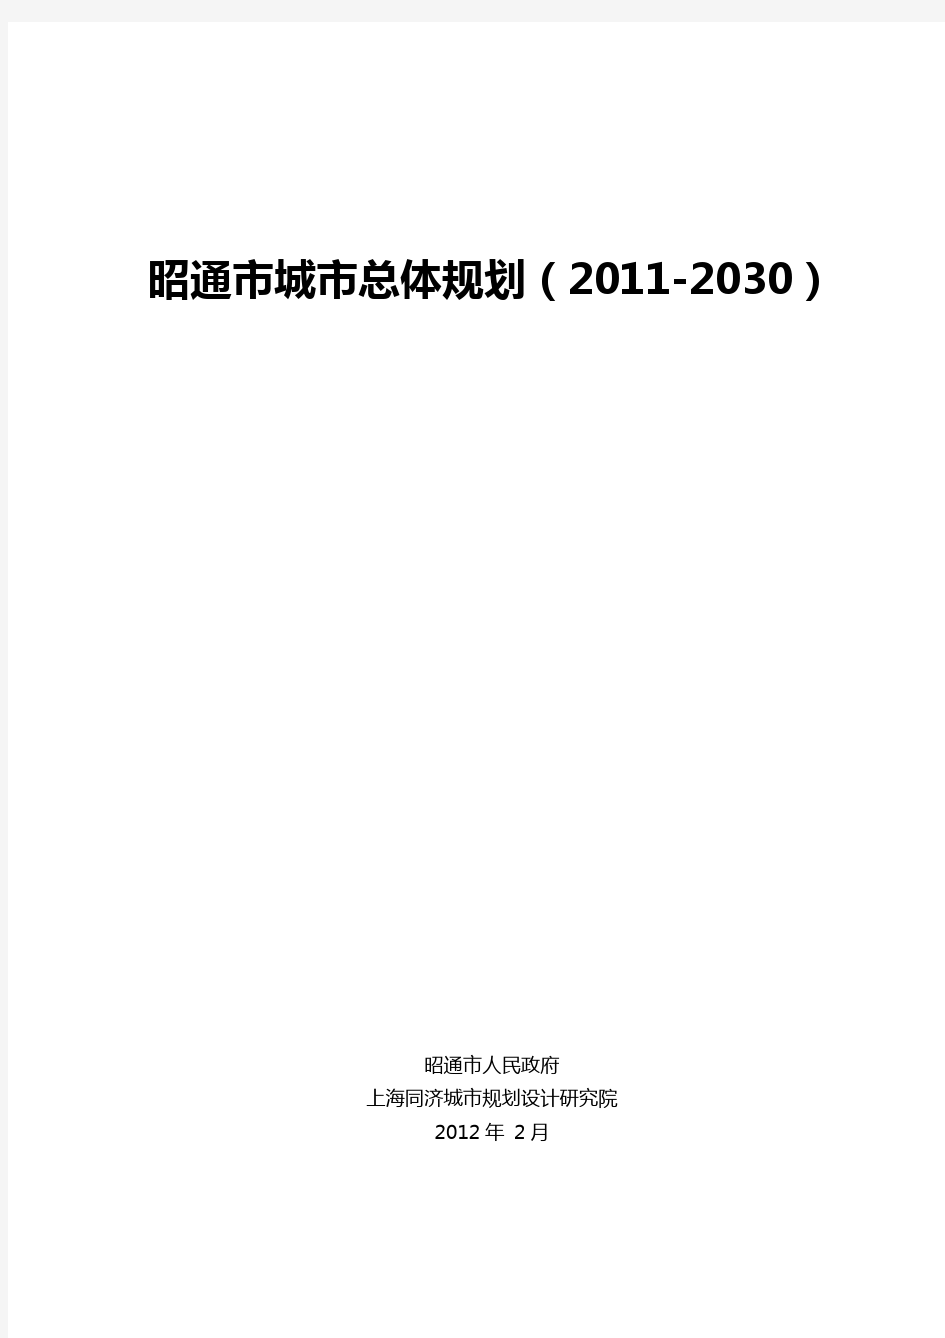 昭通市城市总体规划(2011-2030)